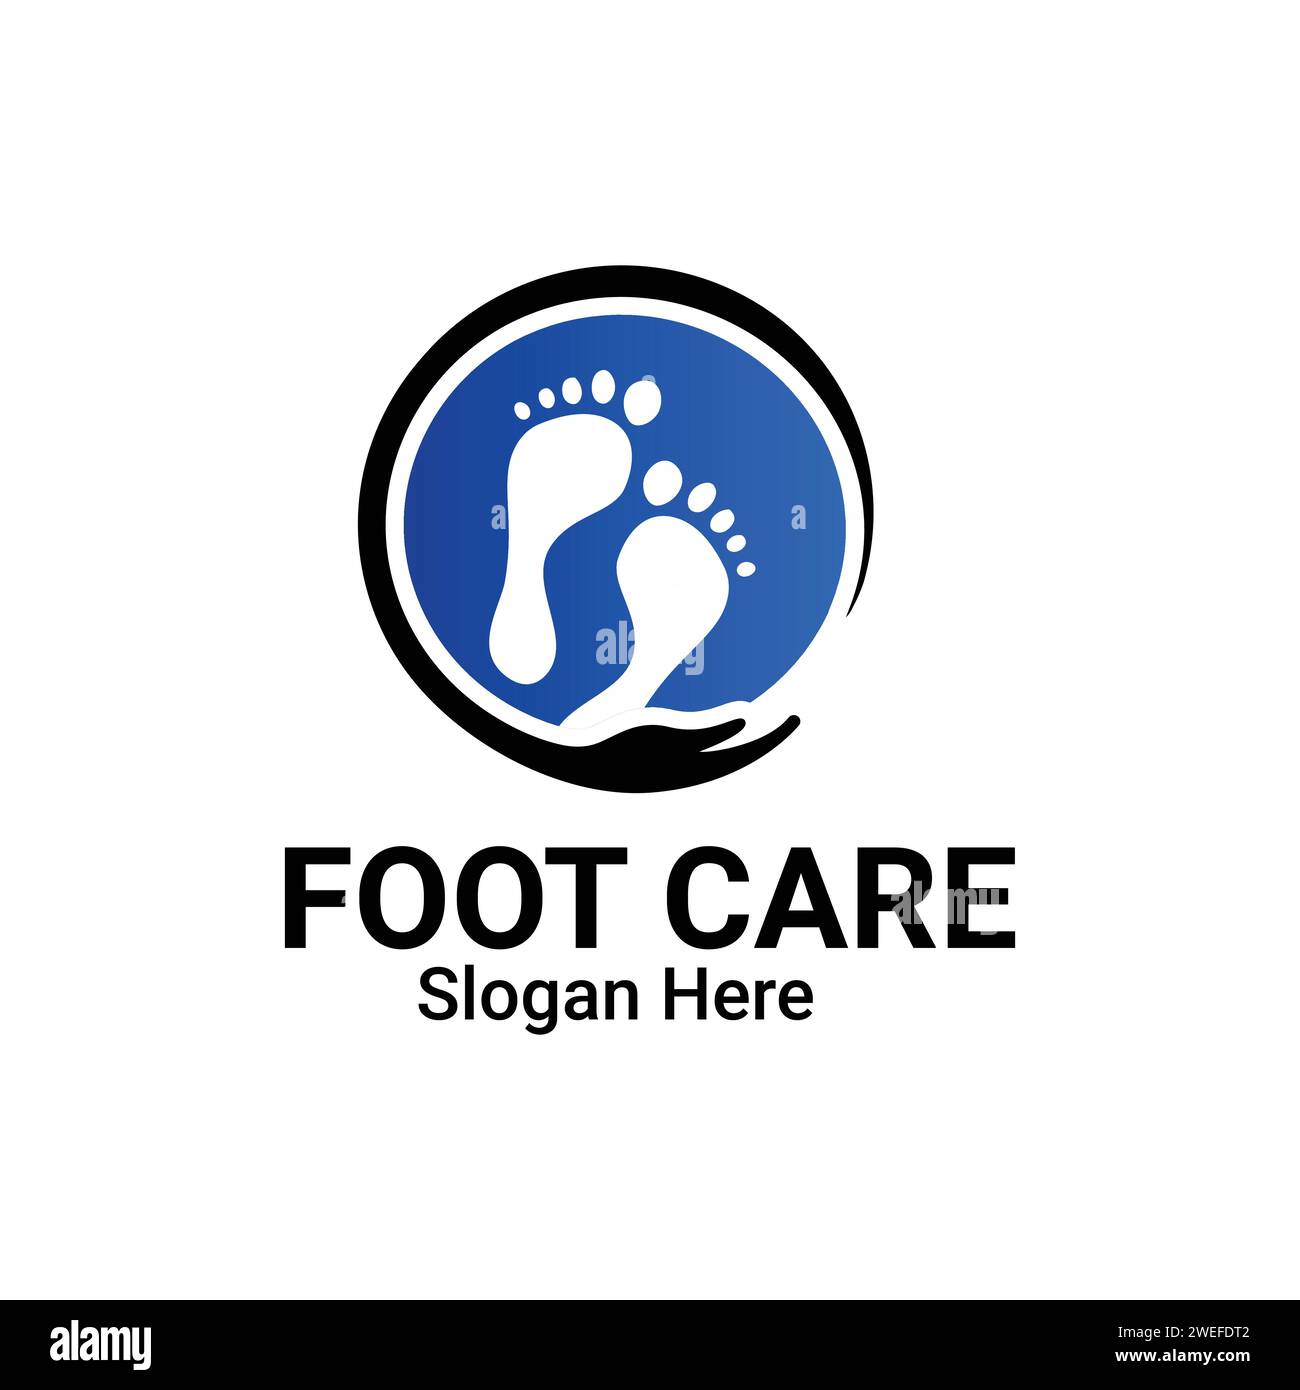 Logo Für Fußpflege. Fußabdrücke Mit Pflegesymbol. Logo Der Klinik Für Fuß- Und Fußgelenkgesundheit. Salon Foot Care Logo Vector Template Symbol. Stock Vektor